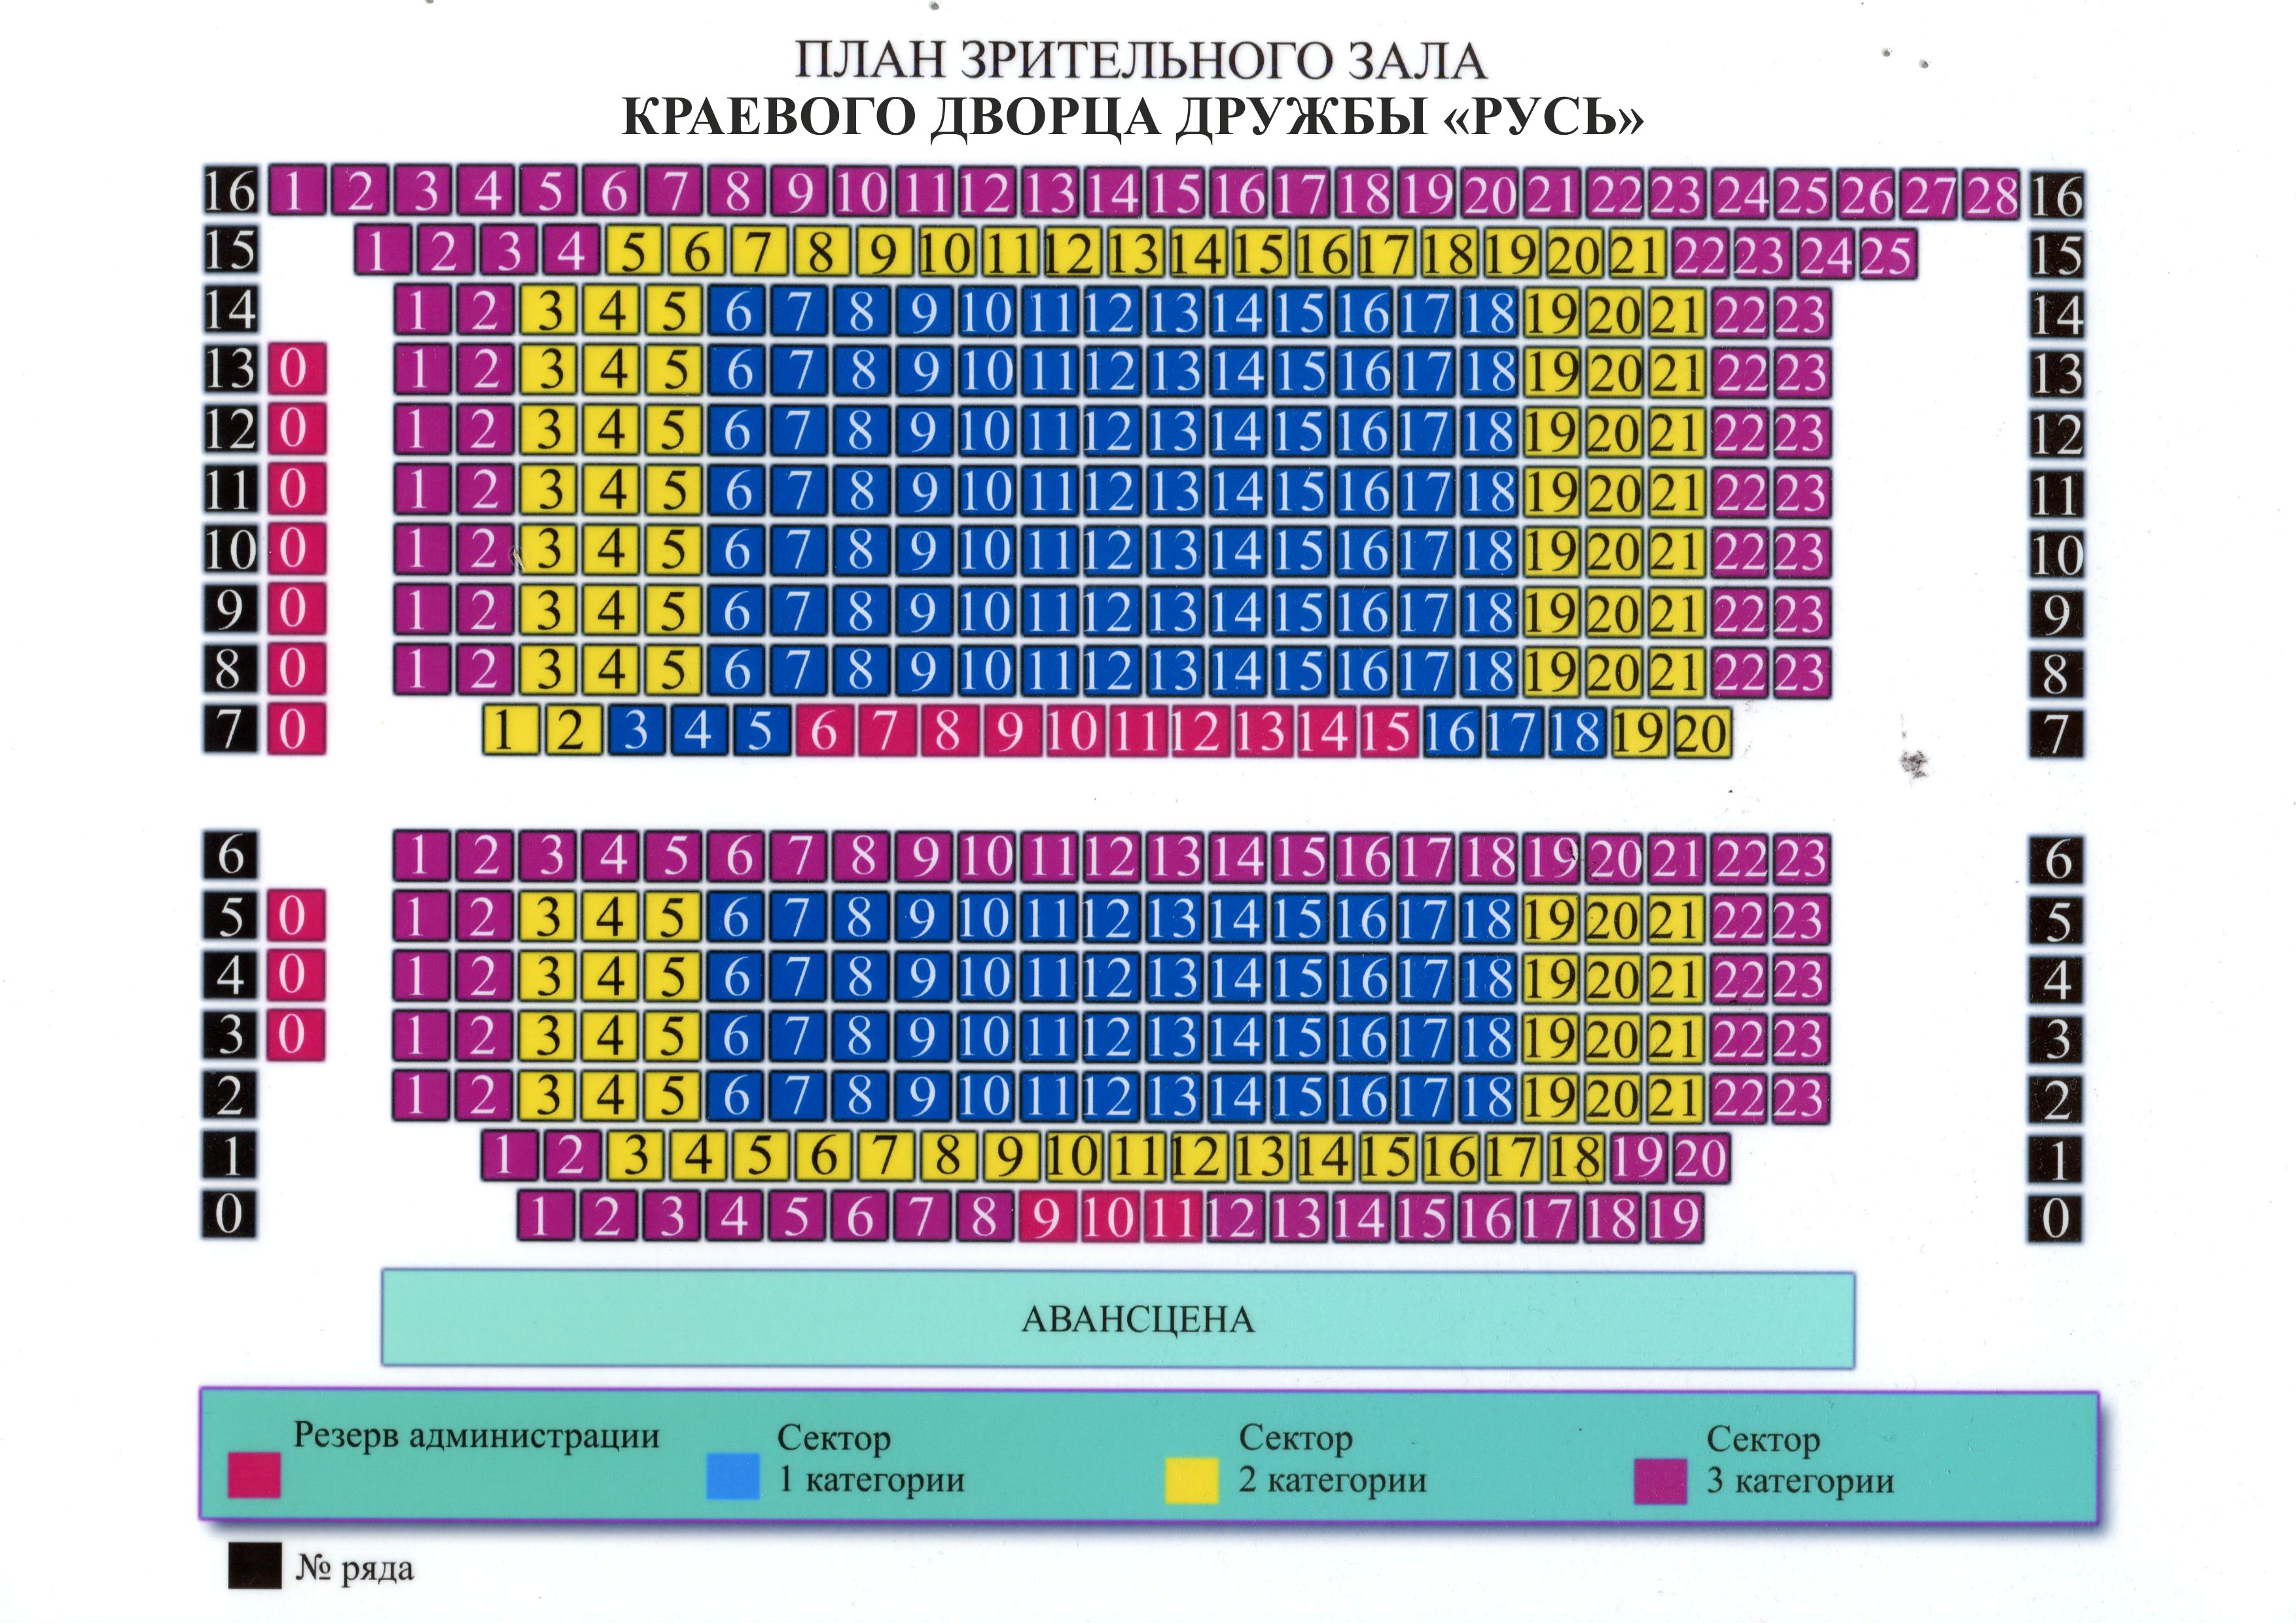 схема кремлевского дворца с местами